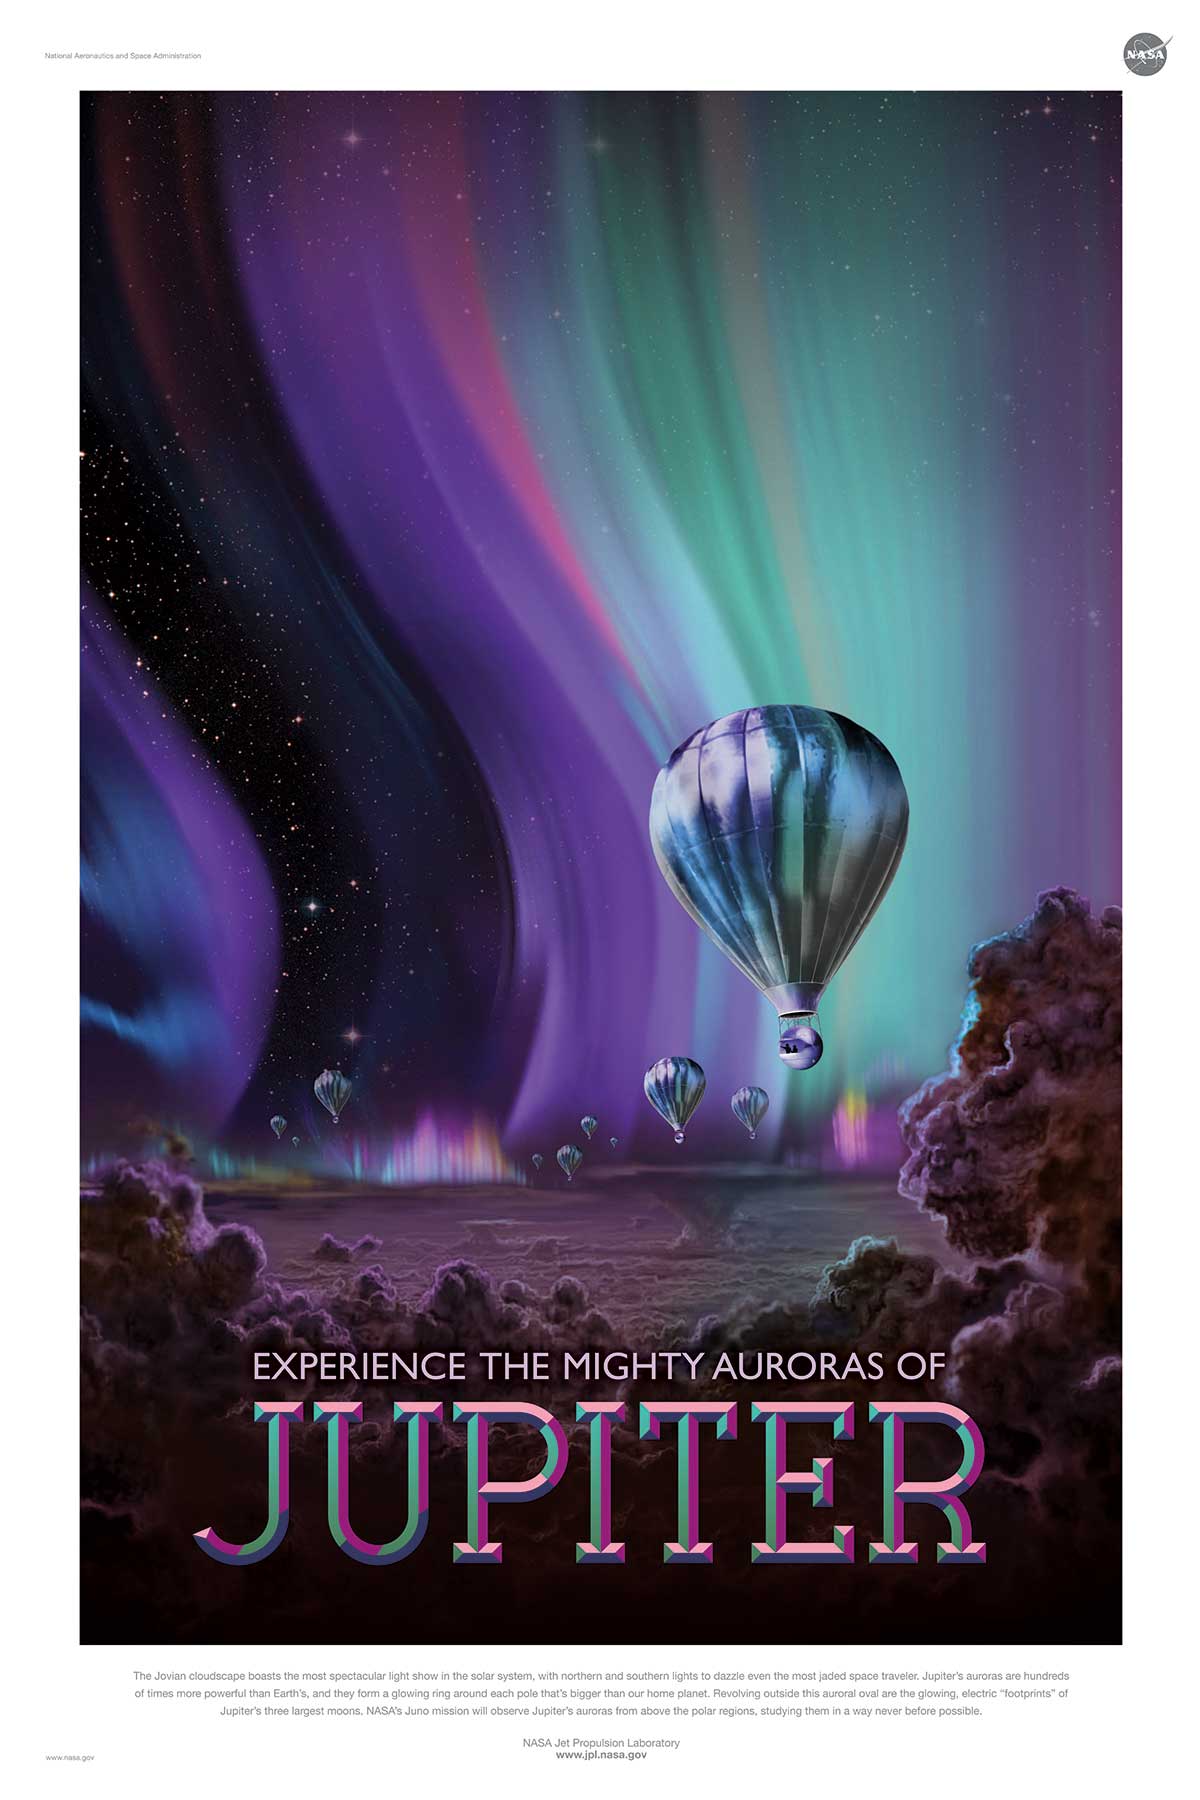 NASA poster promoting space travel to Jupiter